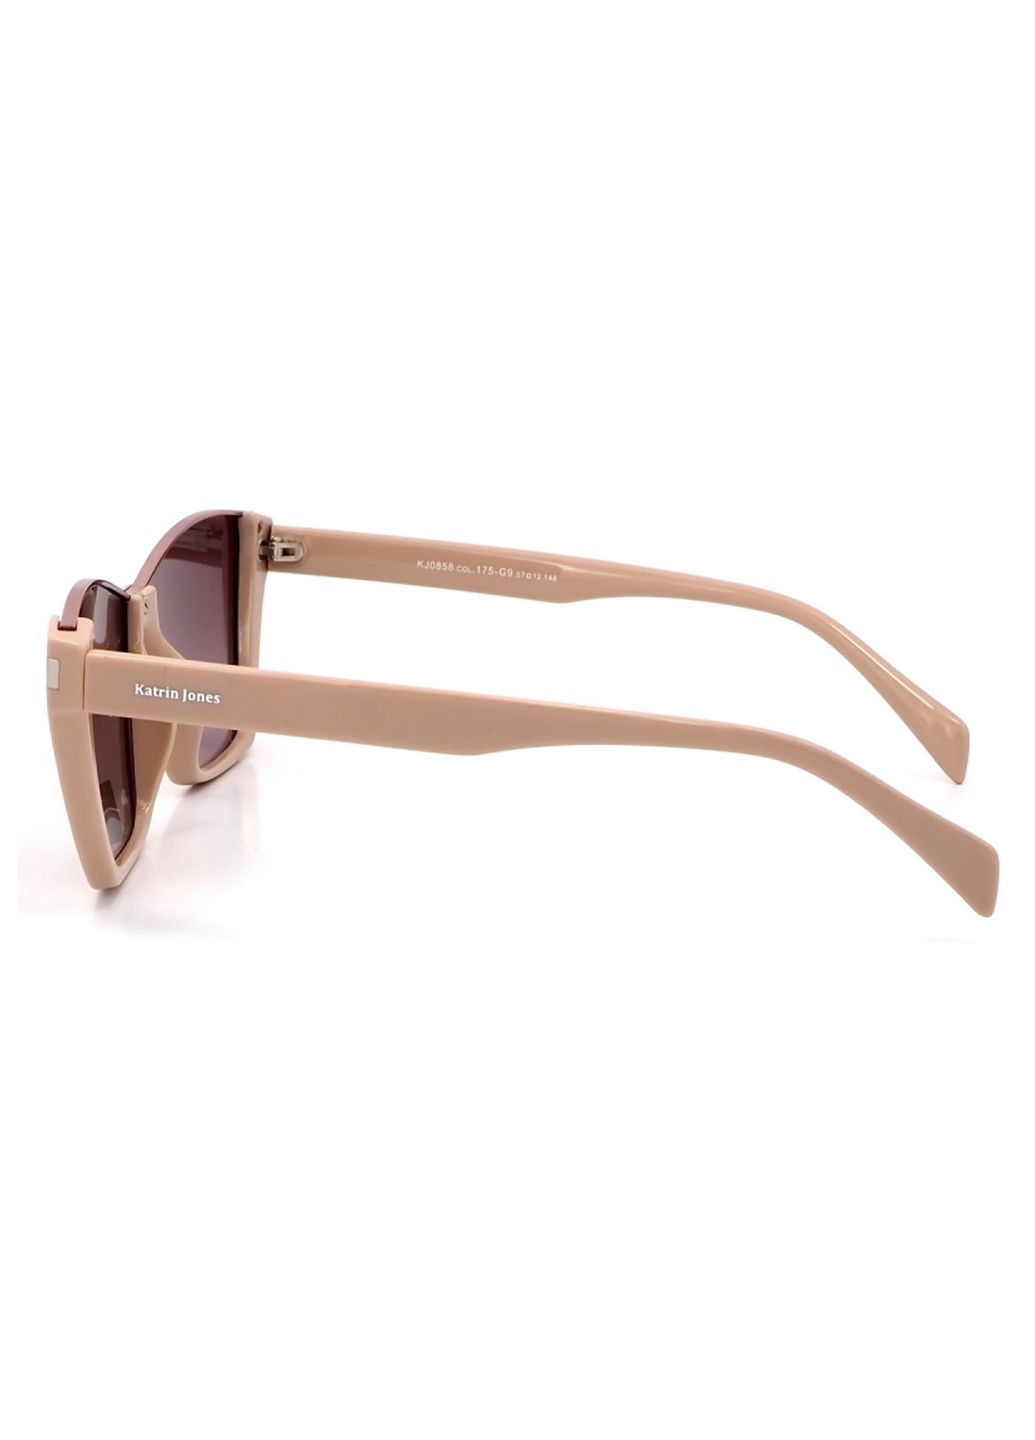 Купить Женские солнцезащитные очки Katrin Jones с поляризацией KJ0858 180040 - Бежевый в интернет-магазине